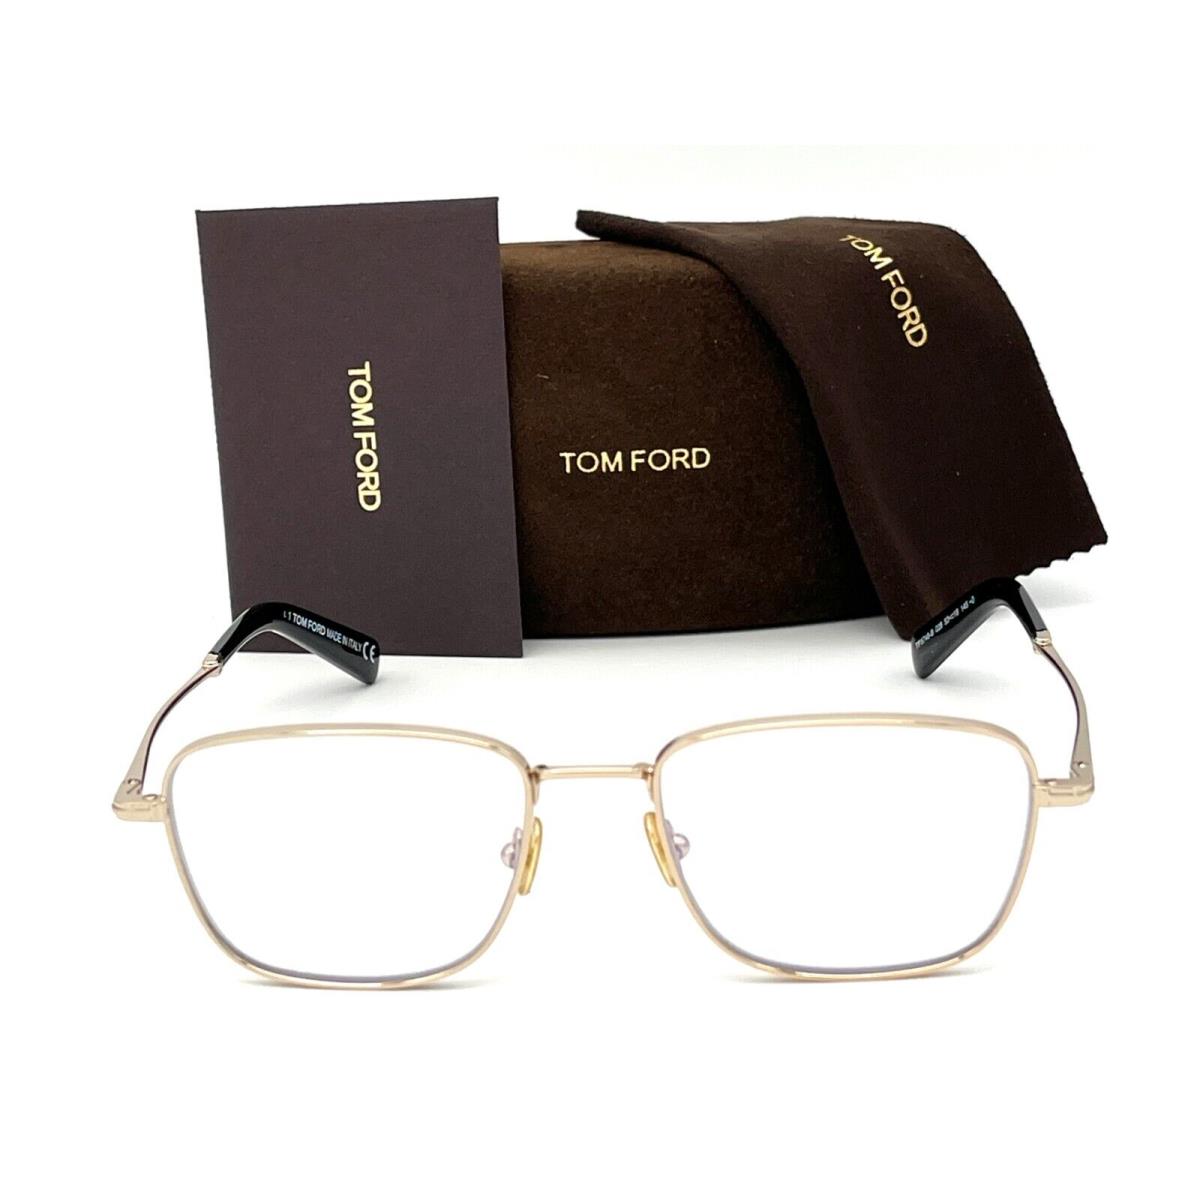 Tom Ford eyeglasses  - Shiny Gold Frame, Blue Block Lens 1